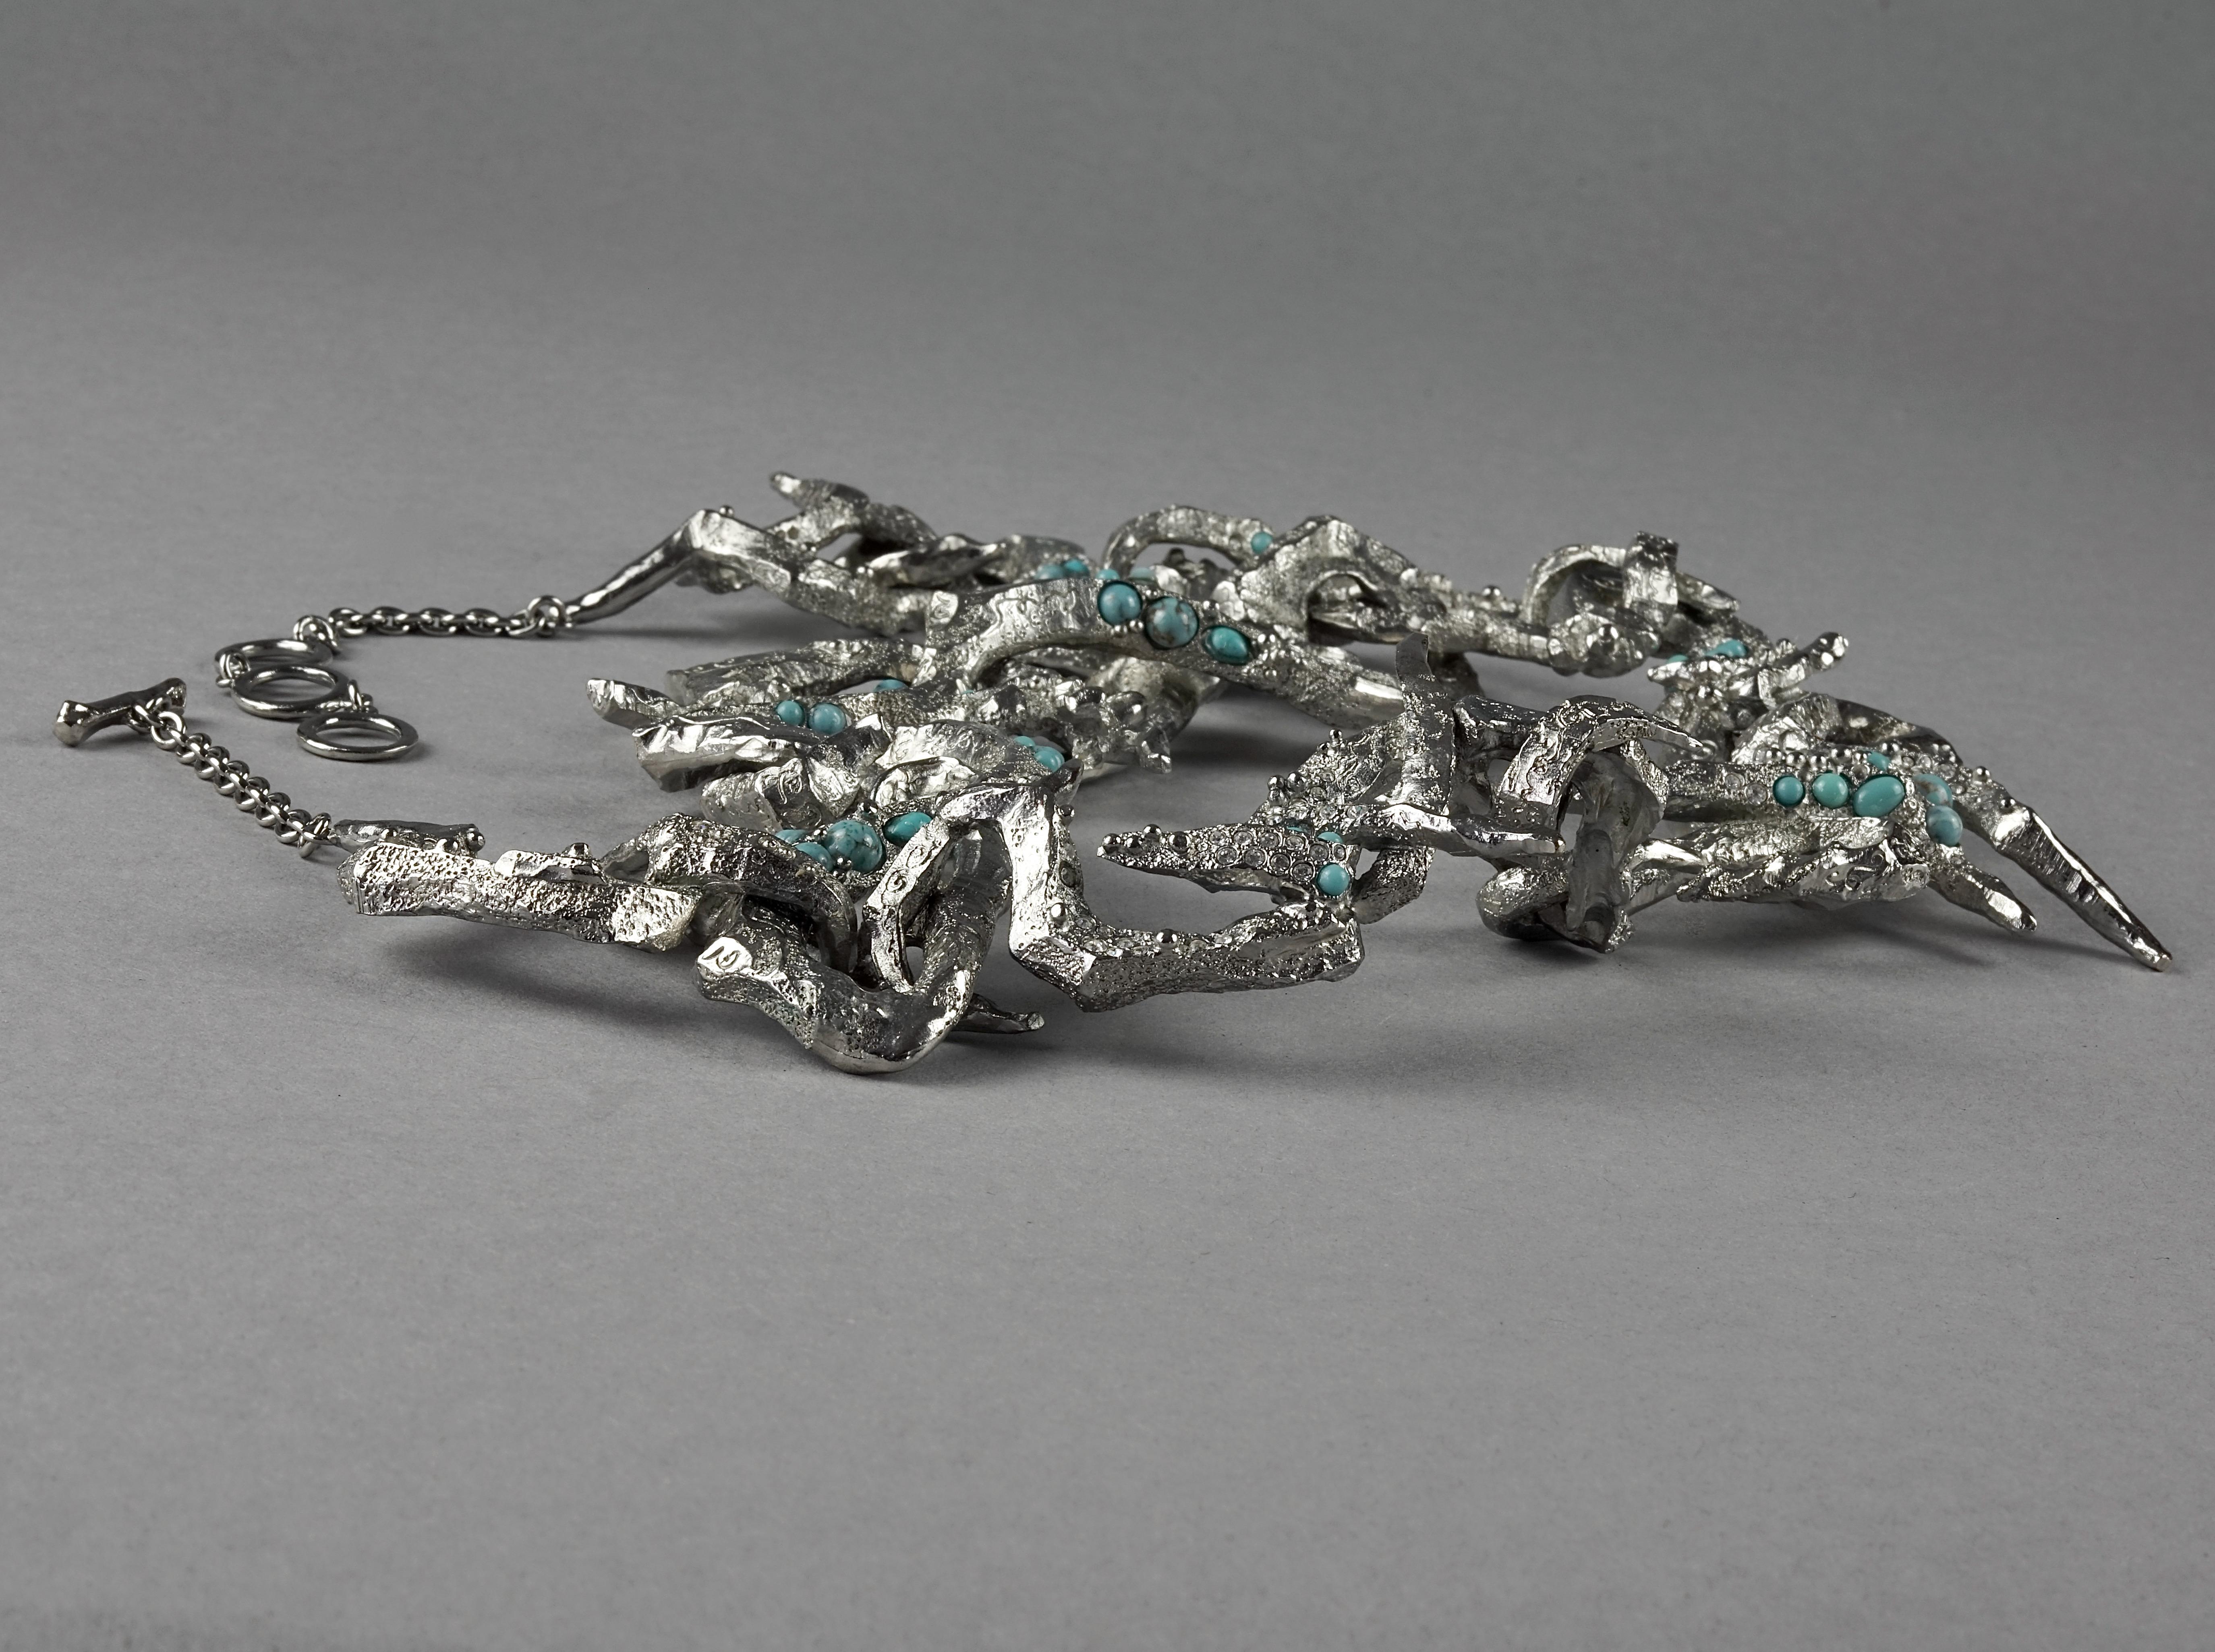 Vintage CHRISTIAN LACROIX Opulent Rigid Turquoise Stone Choker Necklace For Sale 1